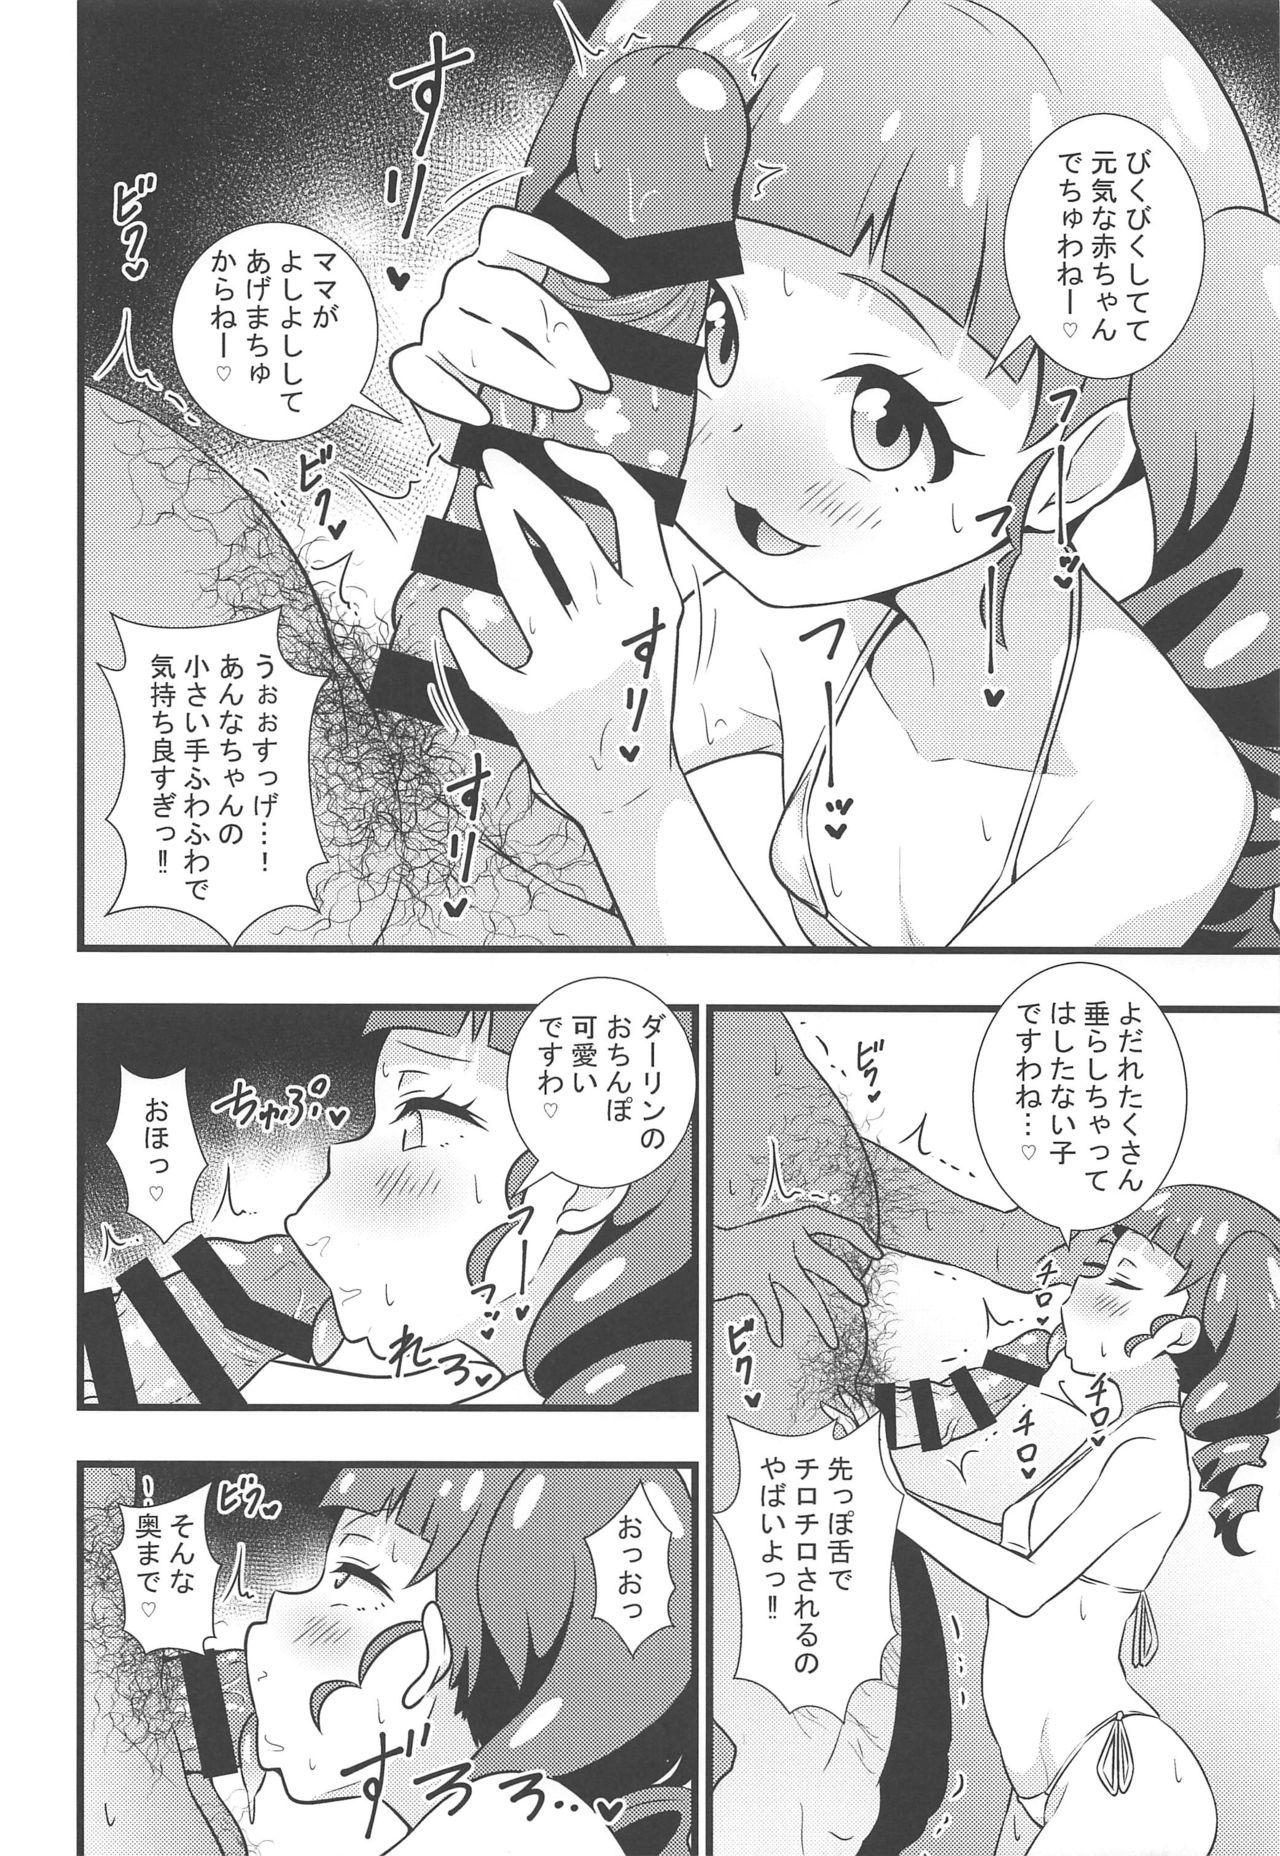 English Anna-chan no Hanayome Shugyou - Kiratto pri chan Thylinh - Page 5